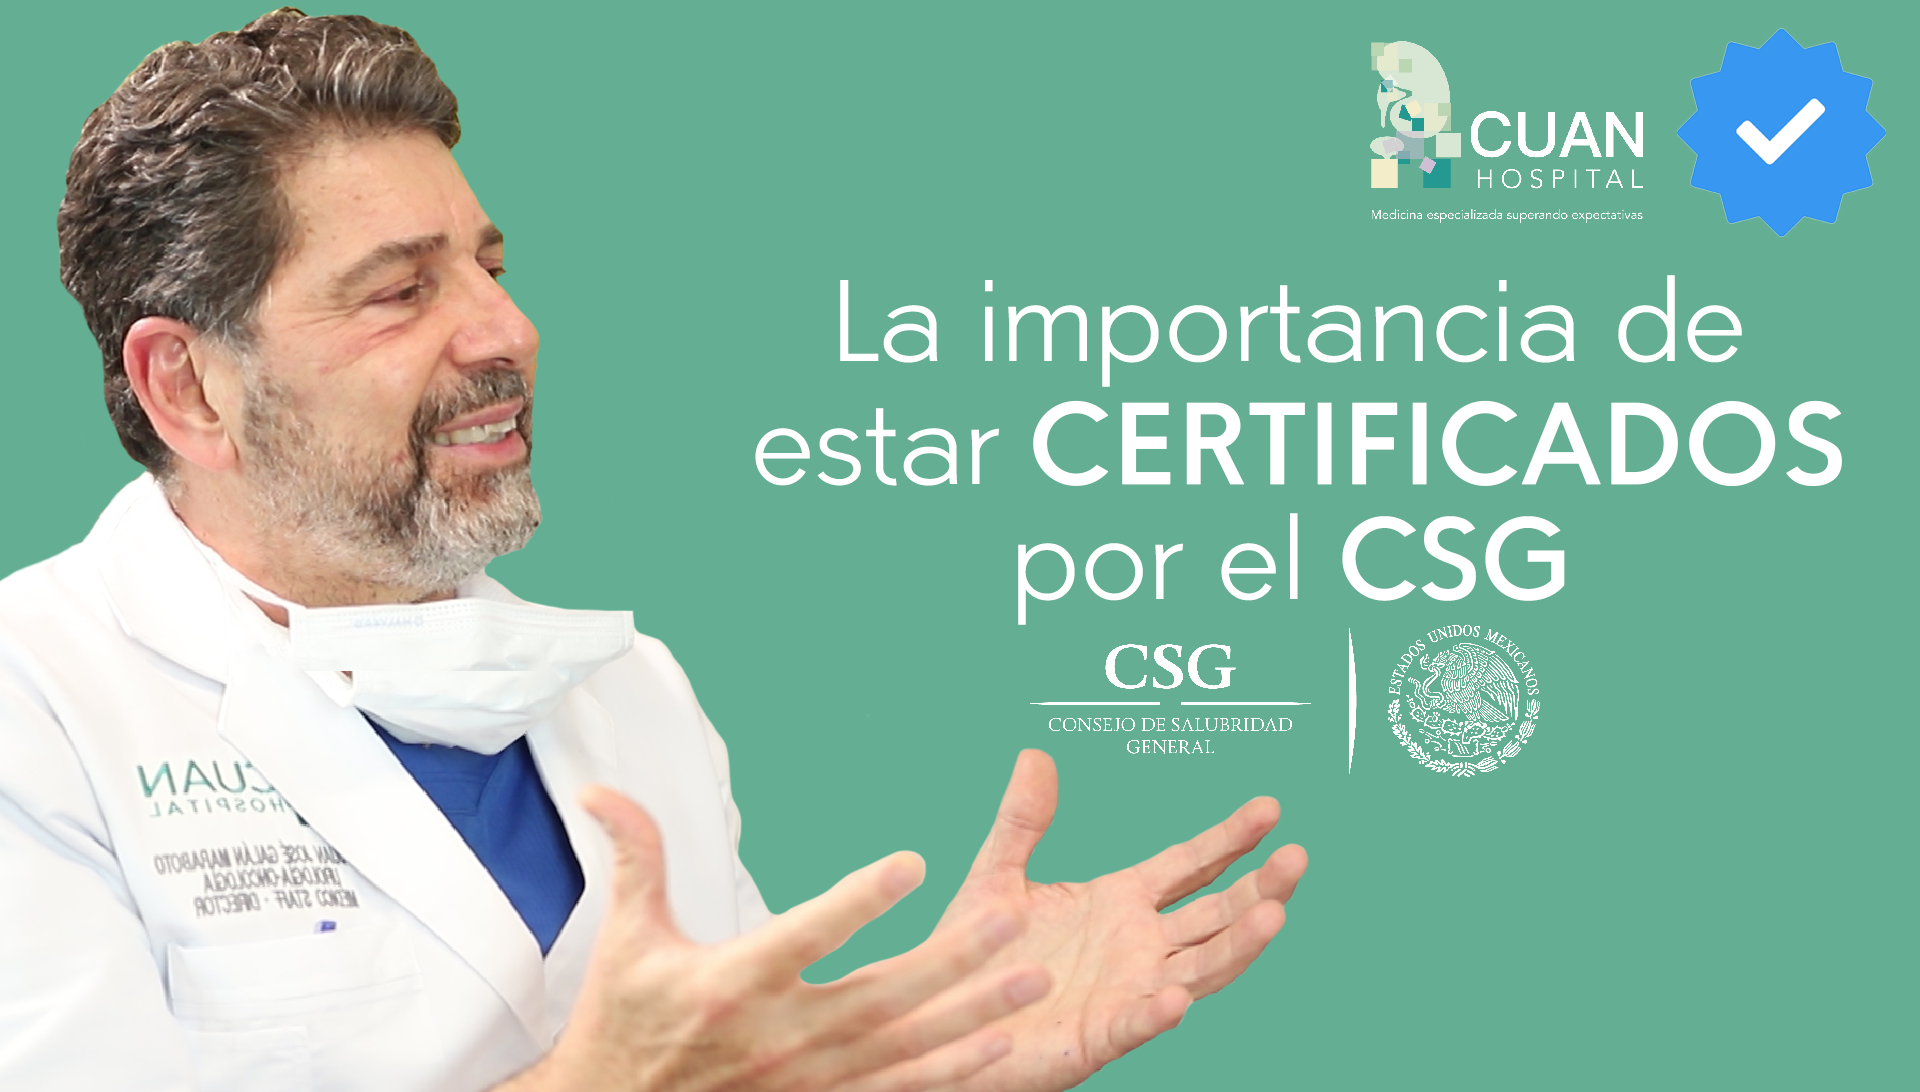 La importancia de estar certificados por el Consejo de Salubridad General  (CSG) - CUAN Hospital